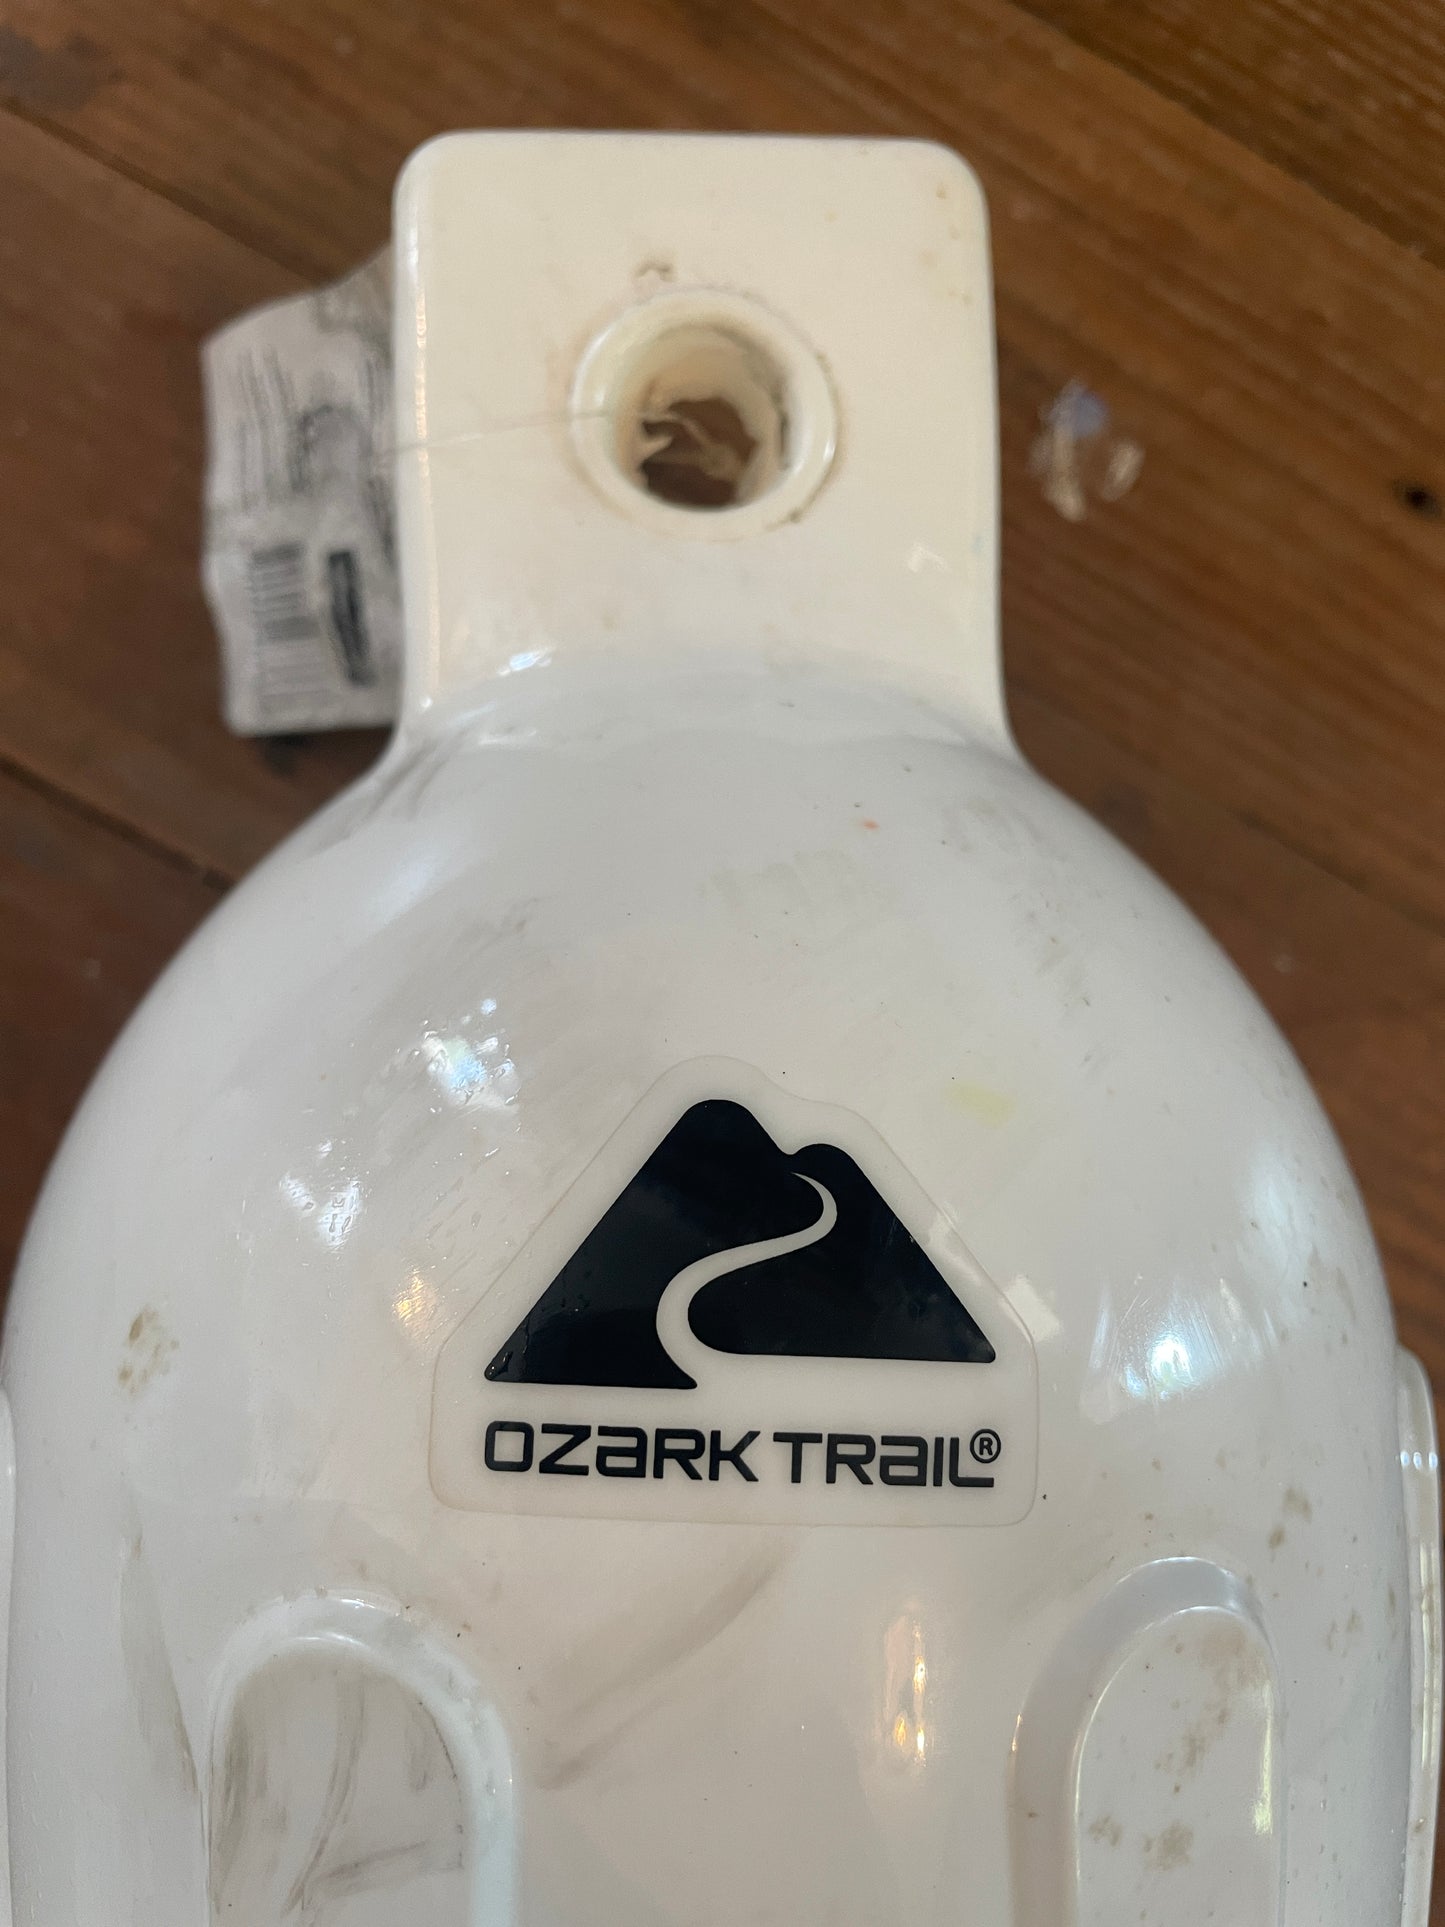 Ozark Trail 5.5” x 20” Inflatable Marine Fender